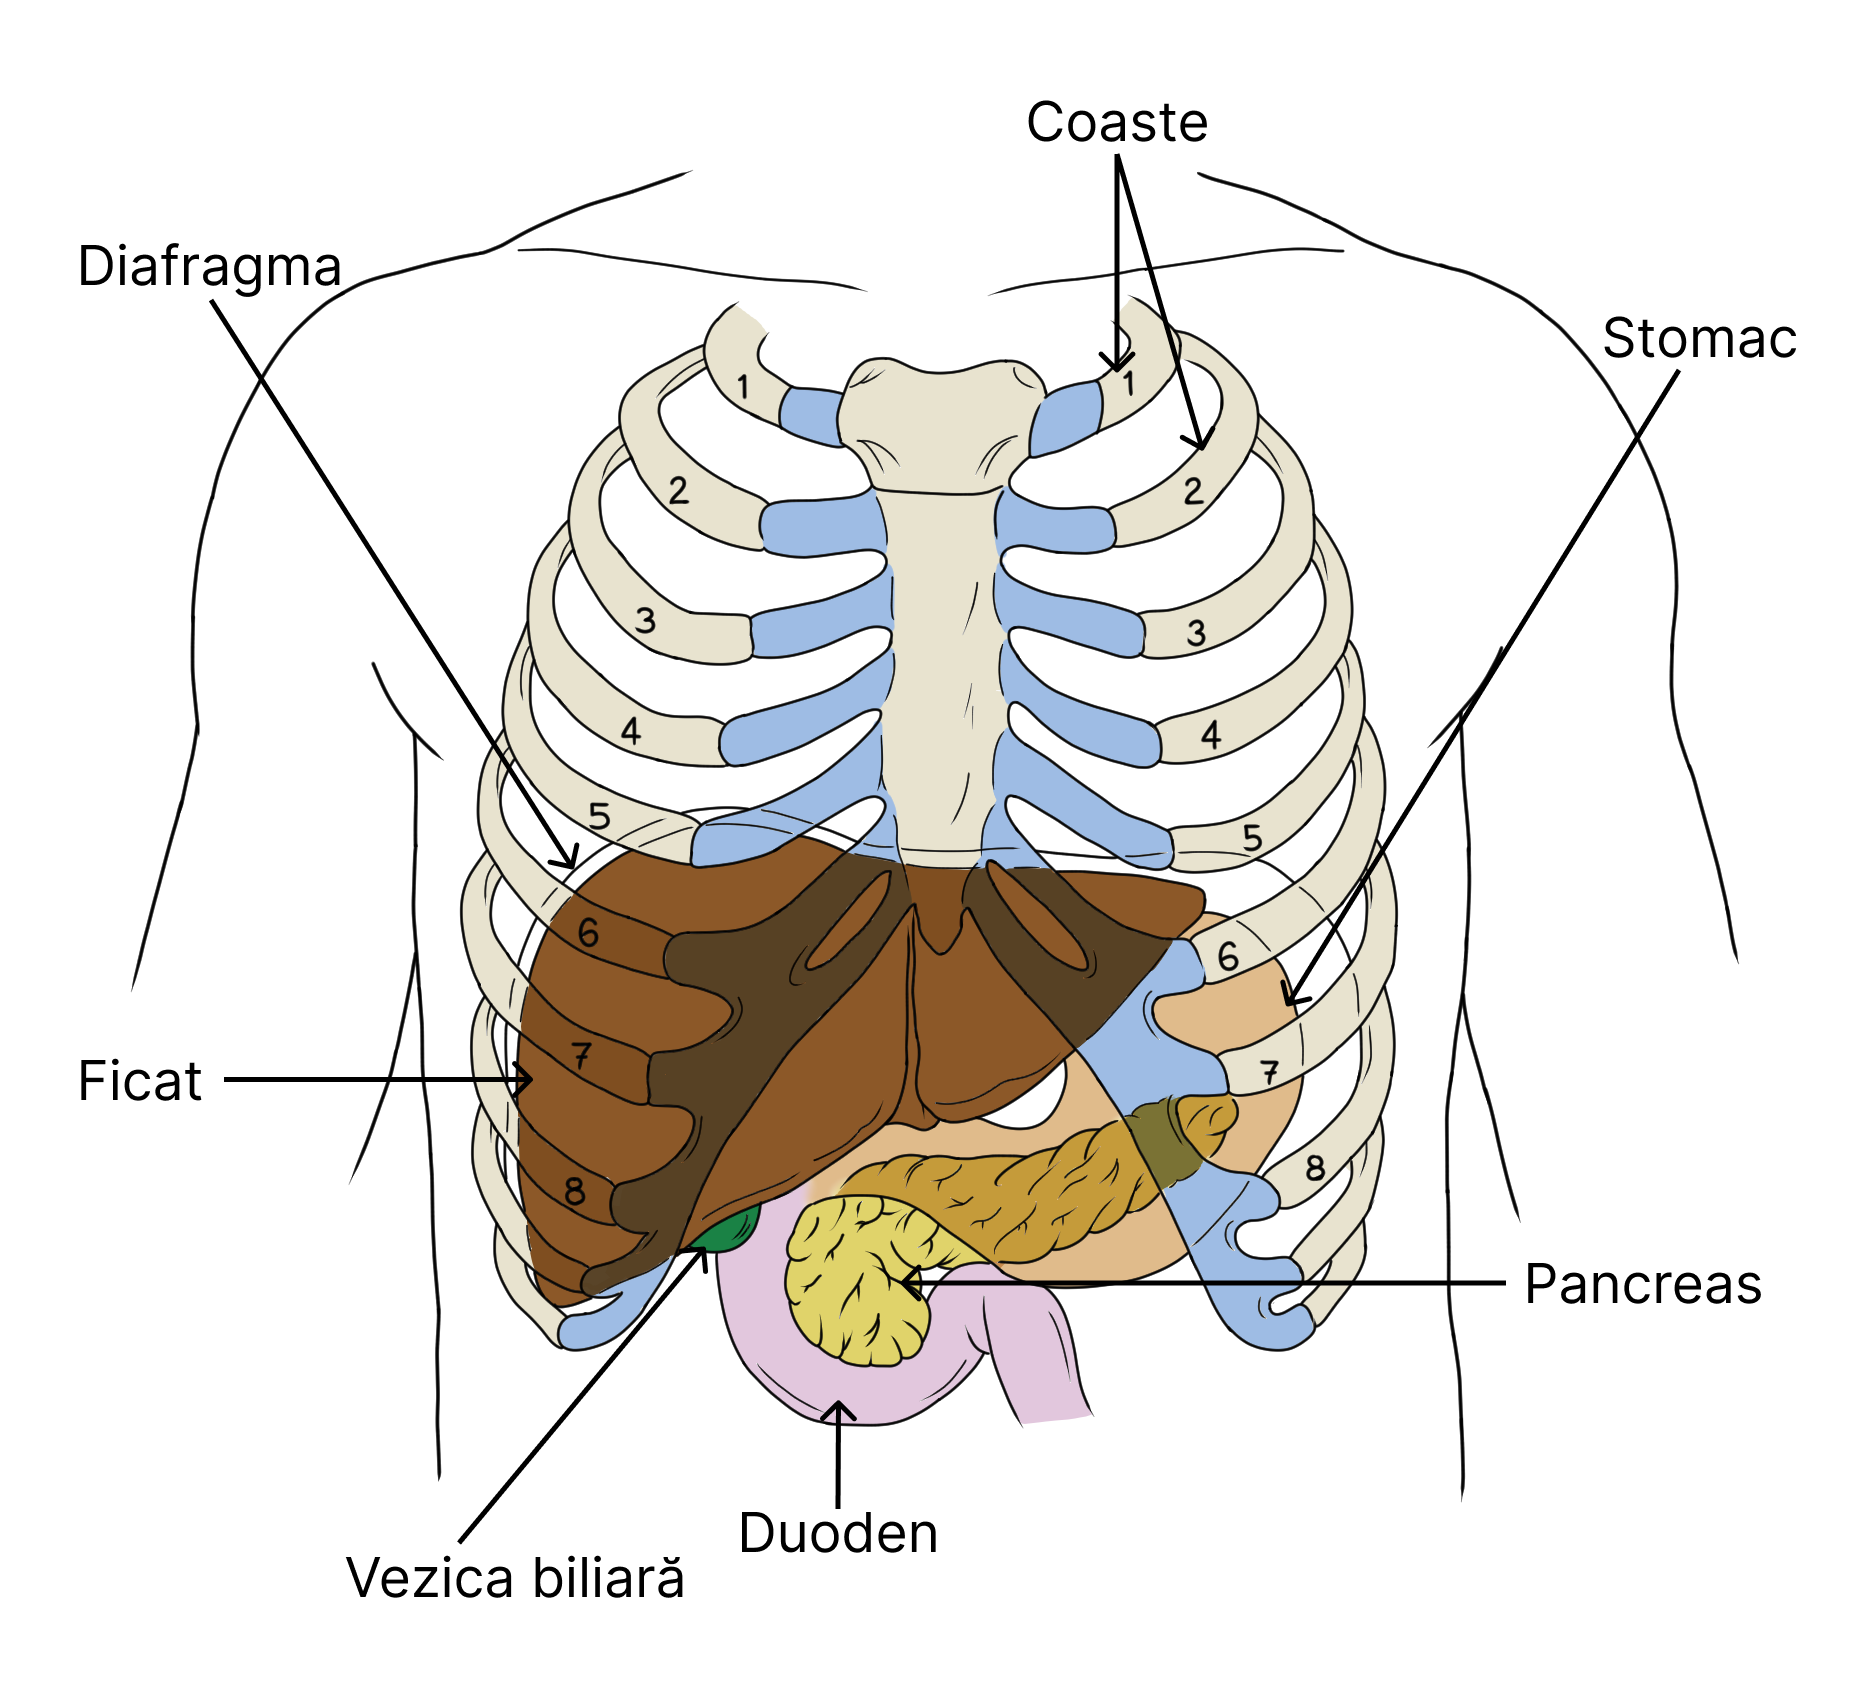 Anatomia și poziția ficatului și a pancreasului - vedere anterioară (ventrală).